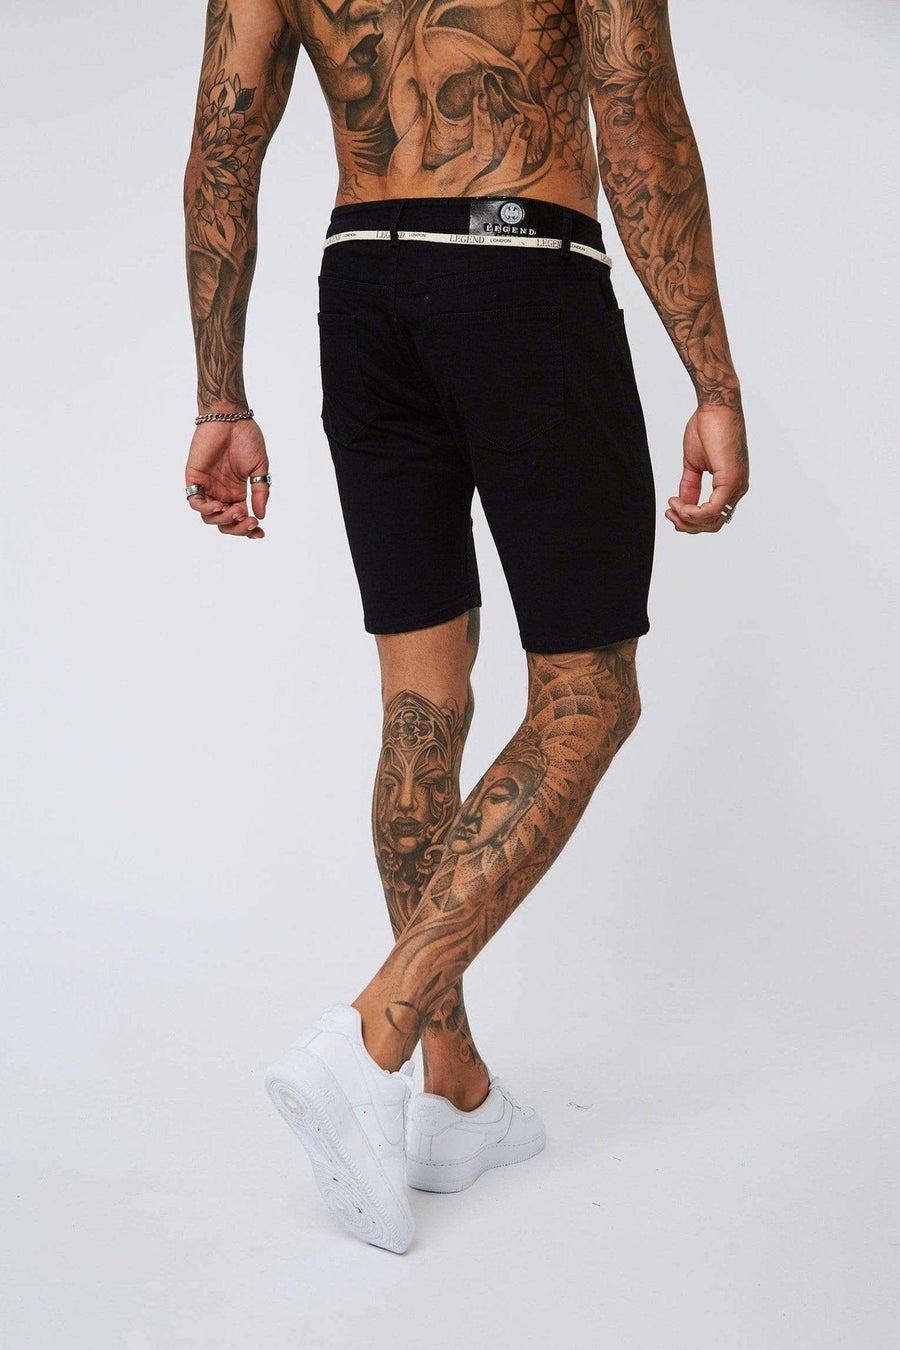 Legend London Shorts Black Denim Shorts - Non-Ripped